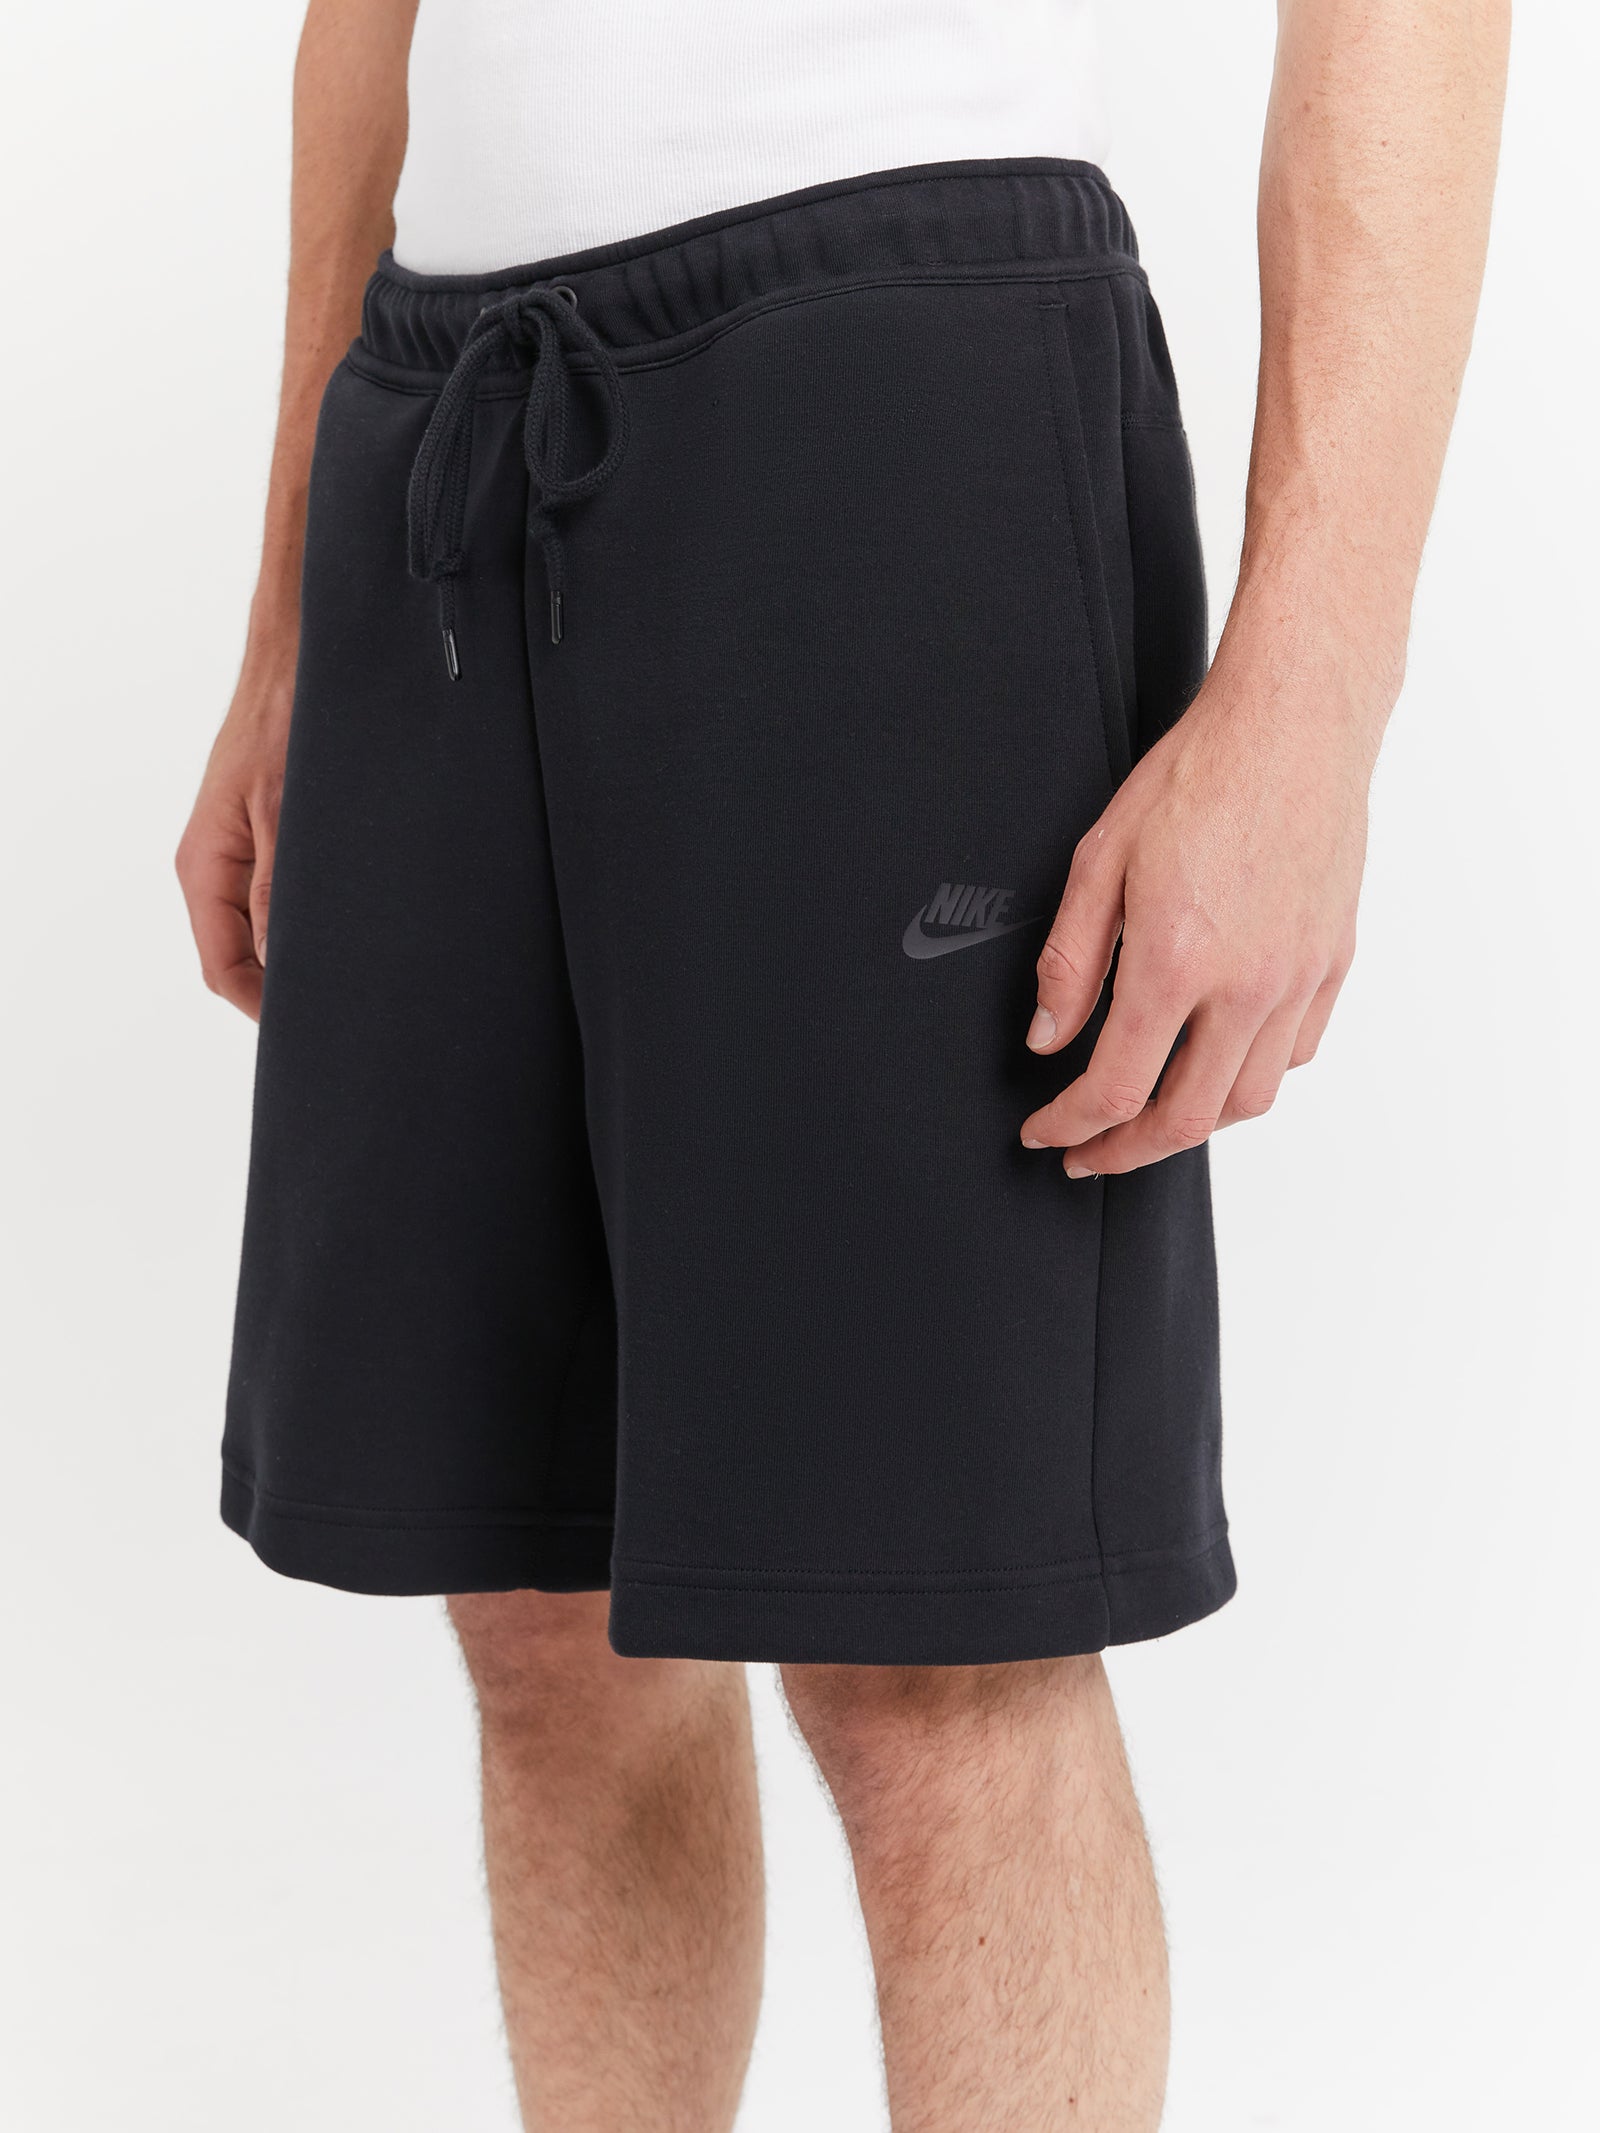 Tech Fleece Shorts in Black